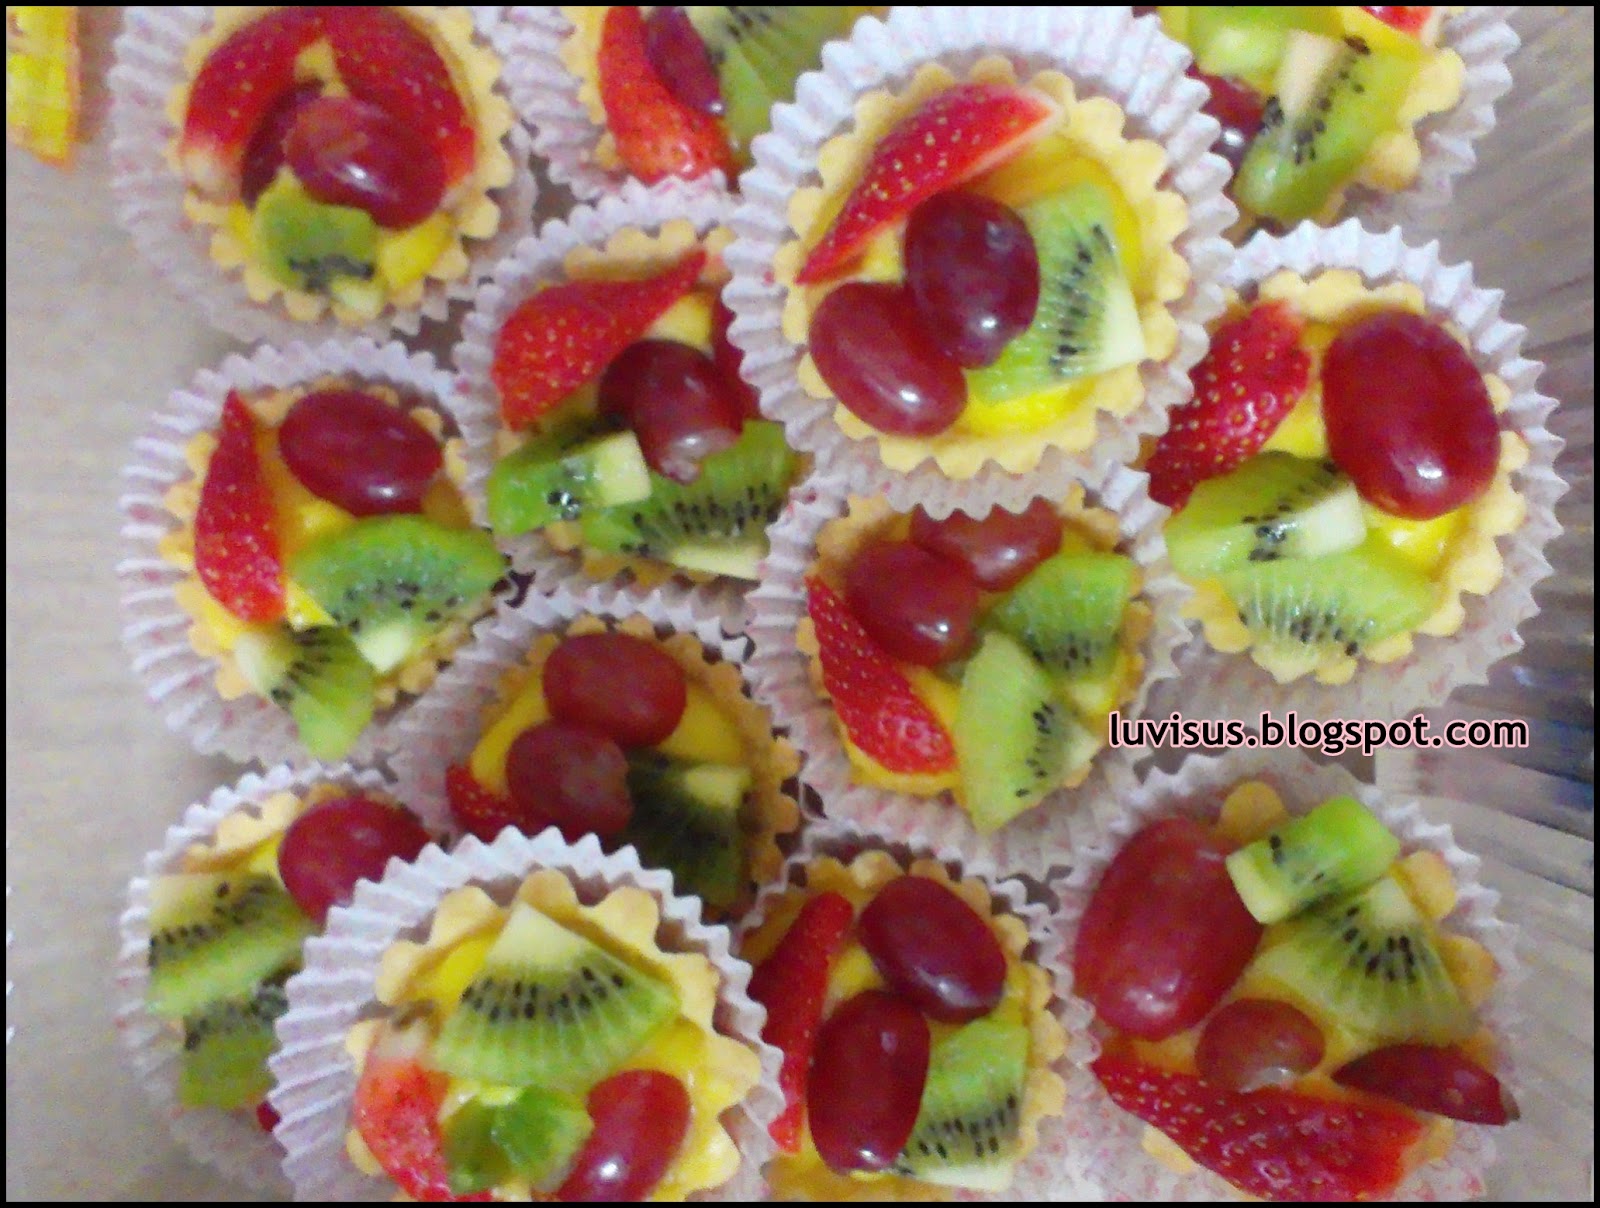 My Sweet Diary ♥.: .Tat Buah-buahan @ Fruit Tart.